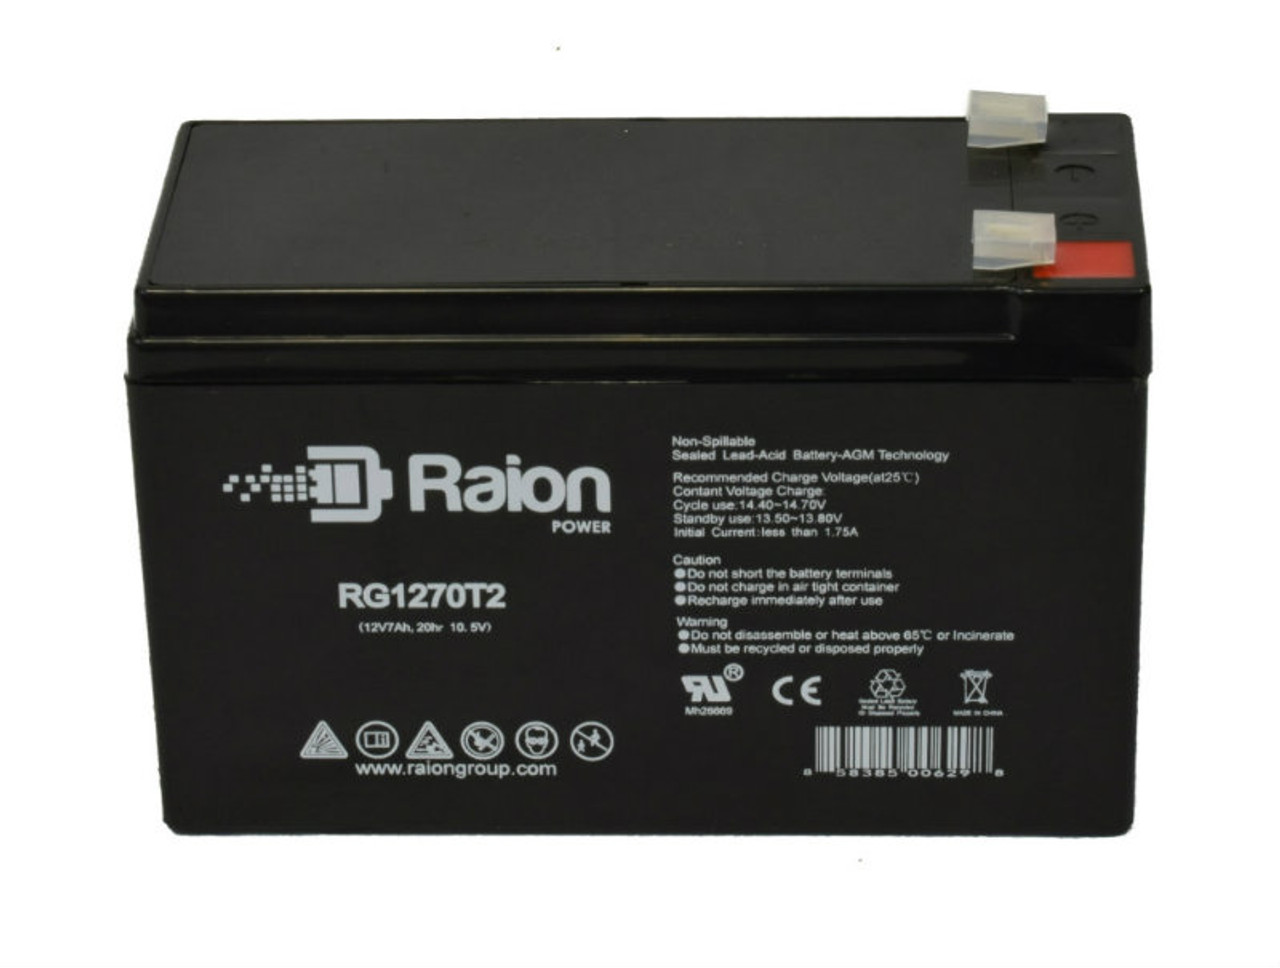 Raion Power RG1270T1 12V 7Ah Lead Acid Battery for Cybex 625A Arc Trainer